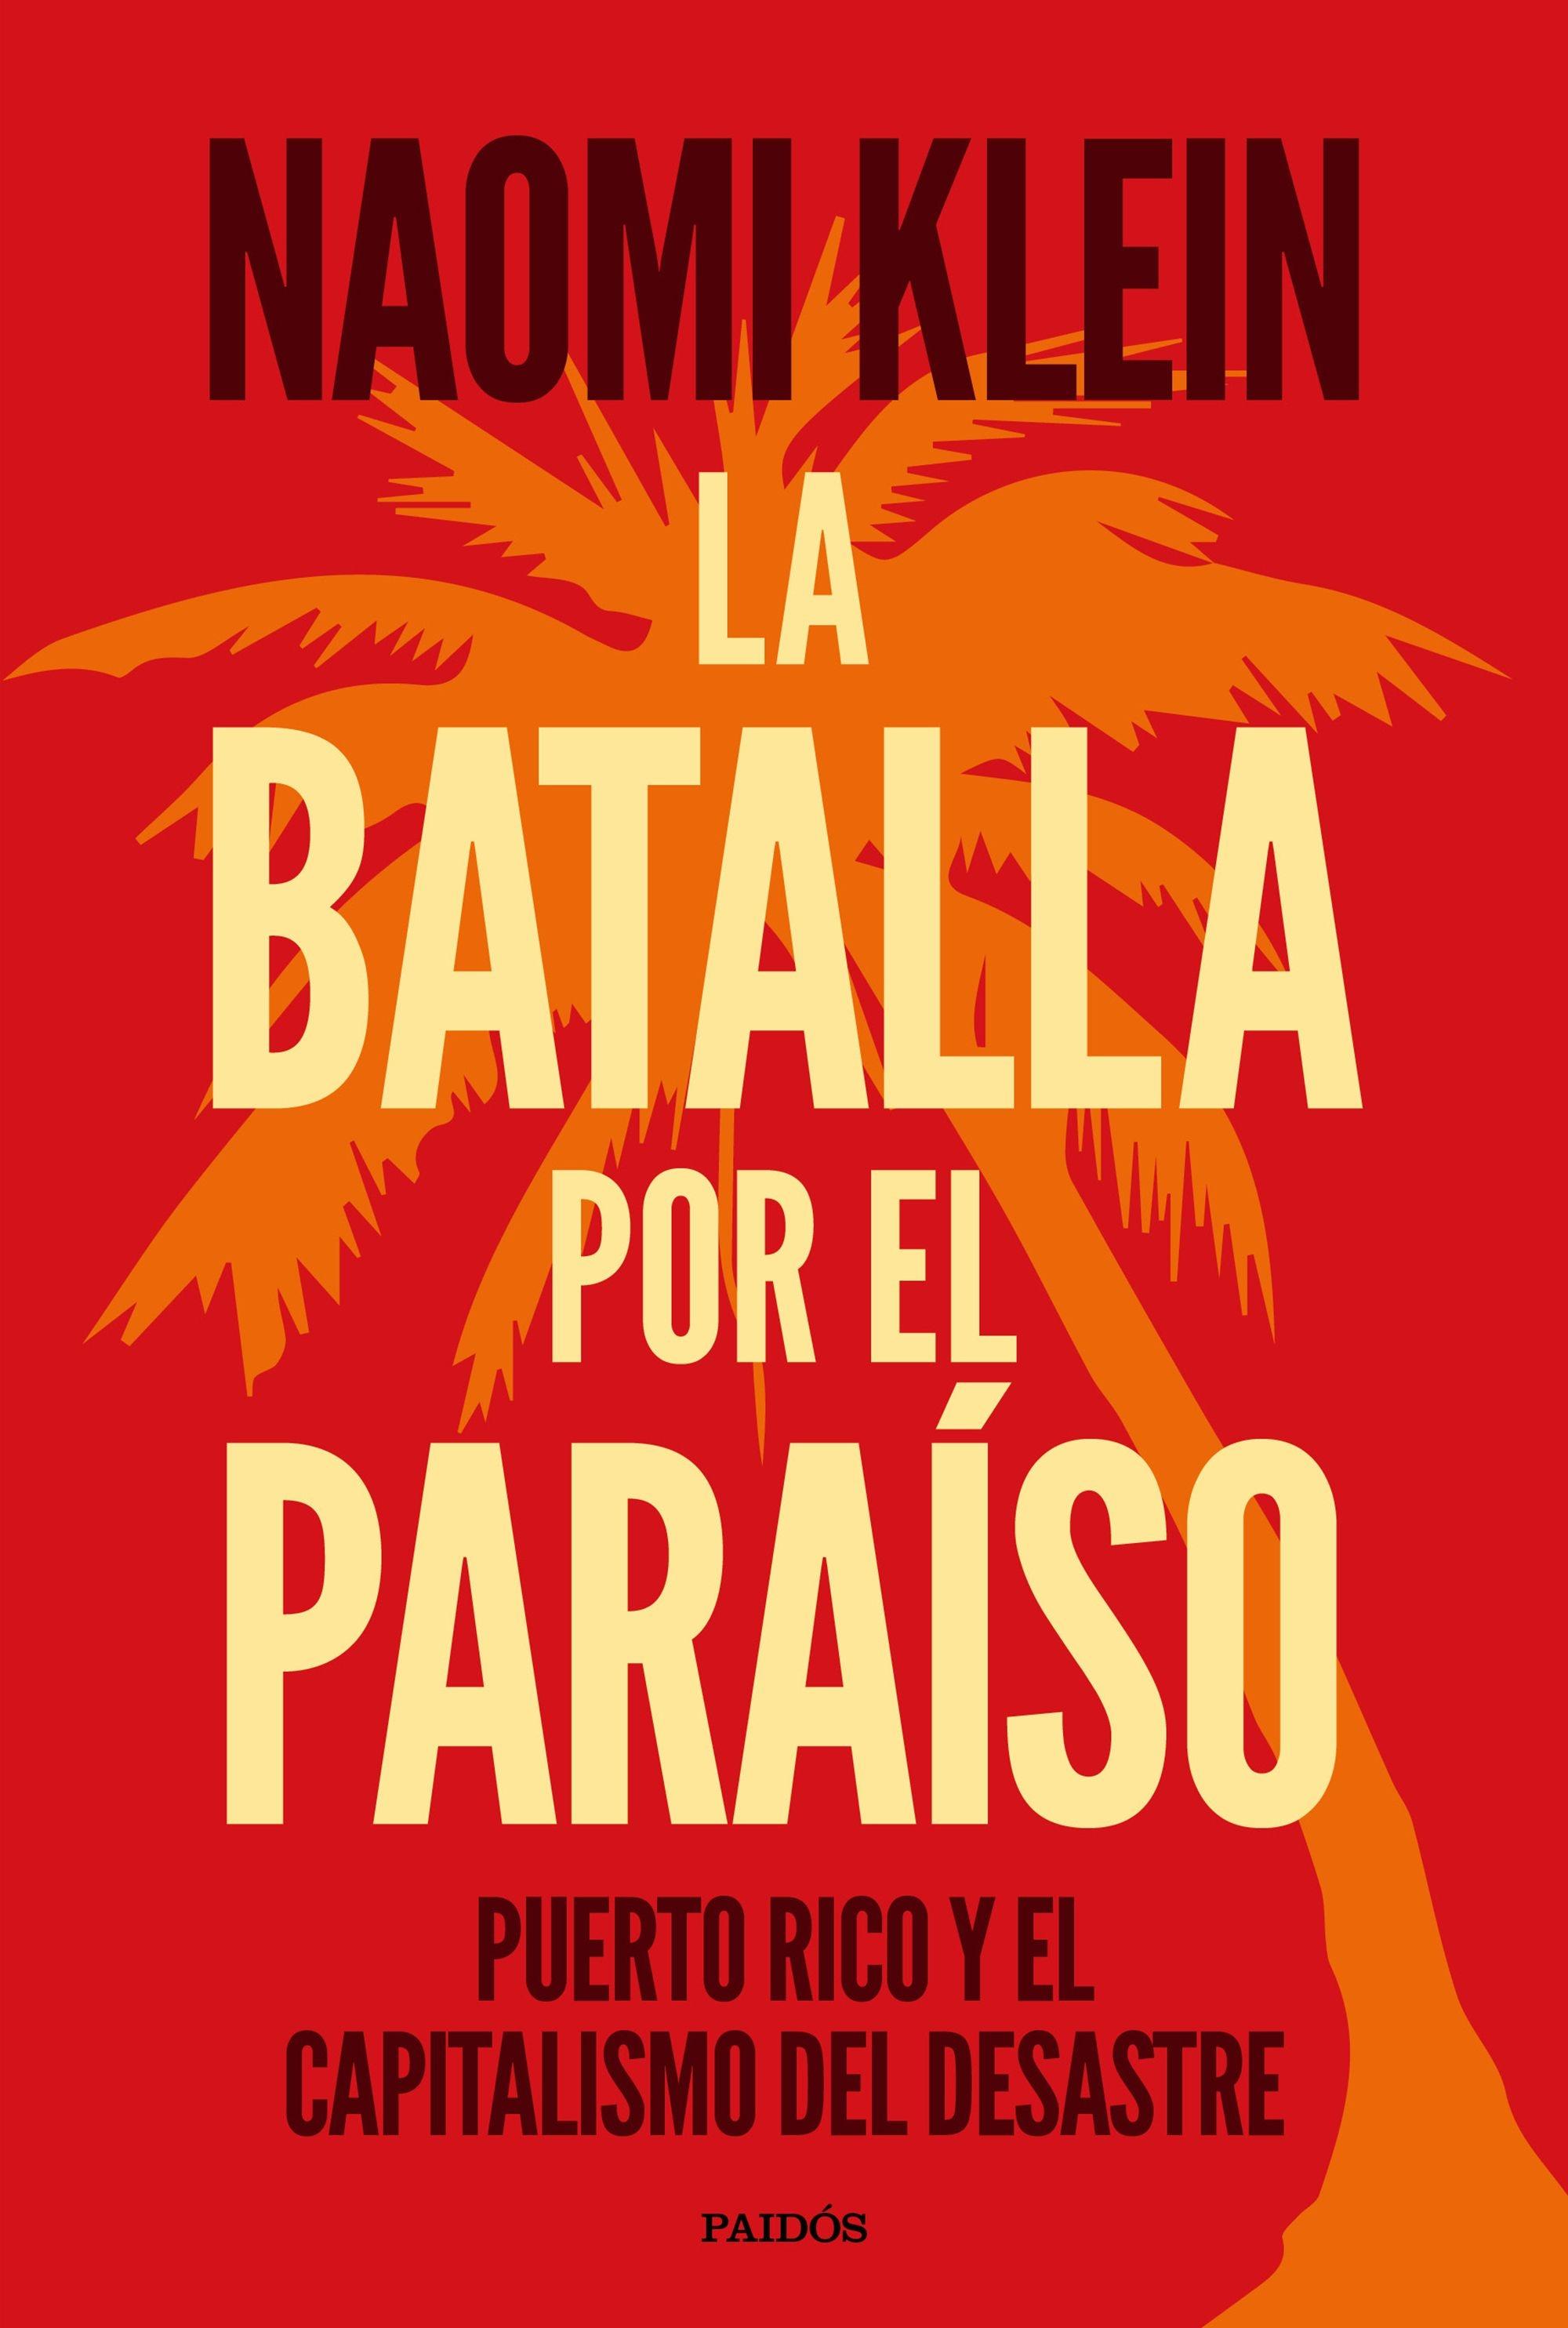 La batalla por el paraíso "Puerto Rico y el capitalismo del desastre". 